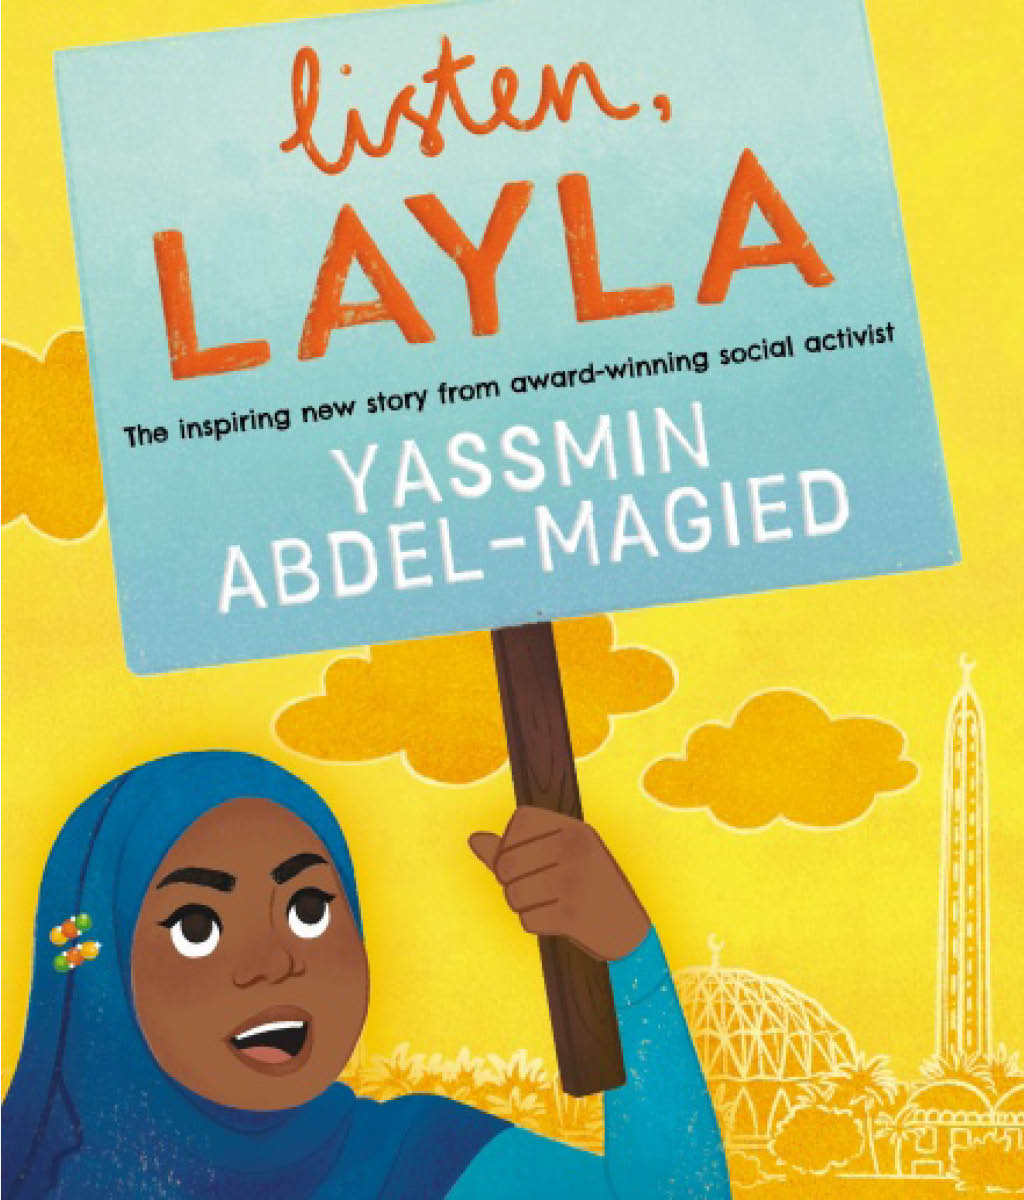 Listen, Layla by Yassmin Abdel-Magied